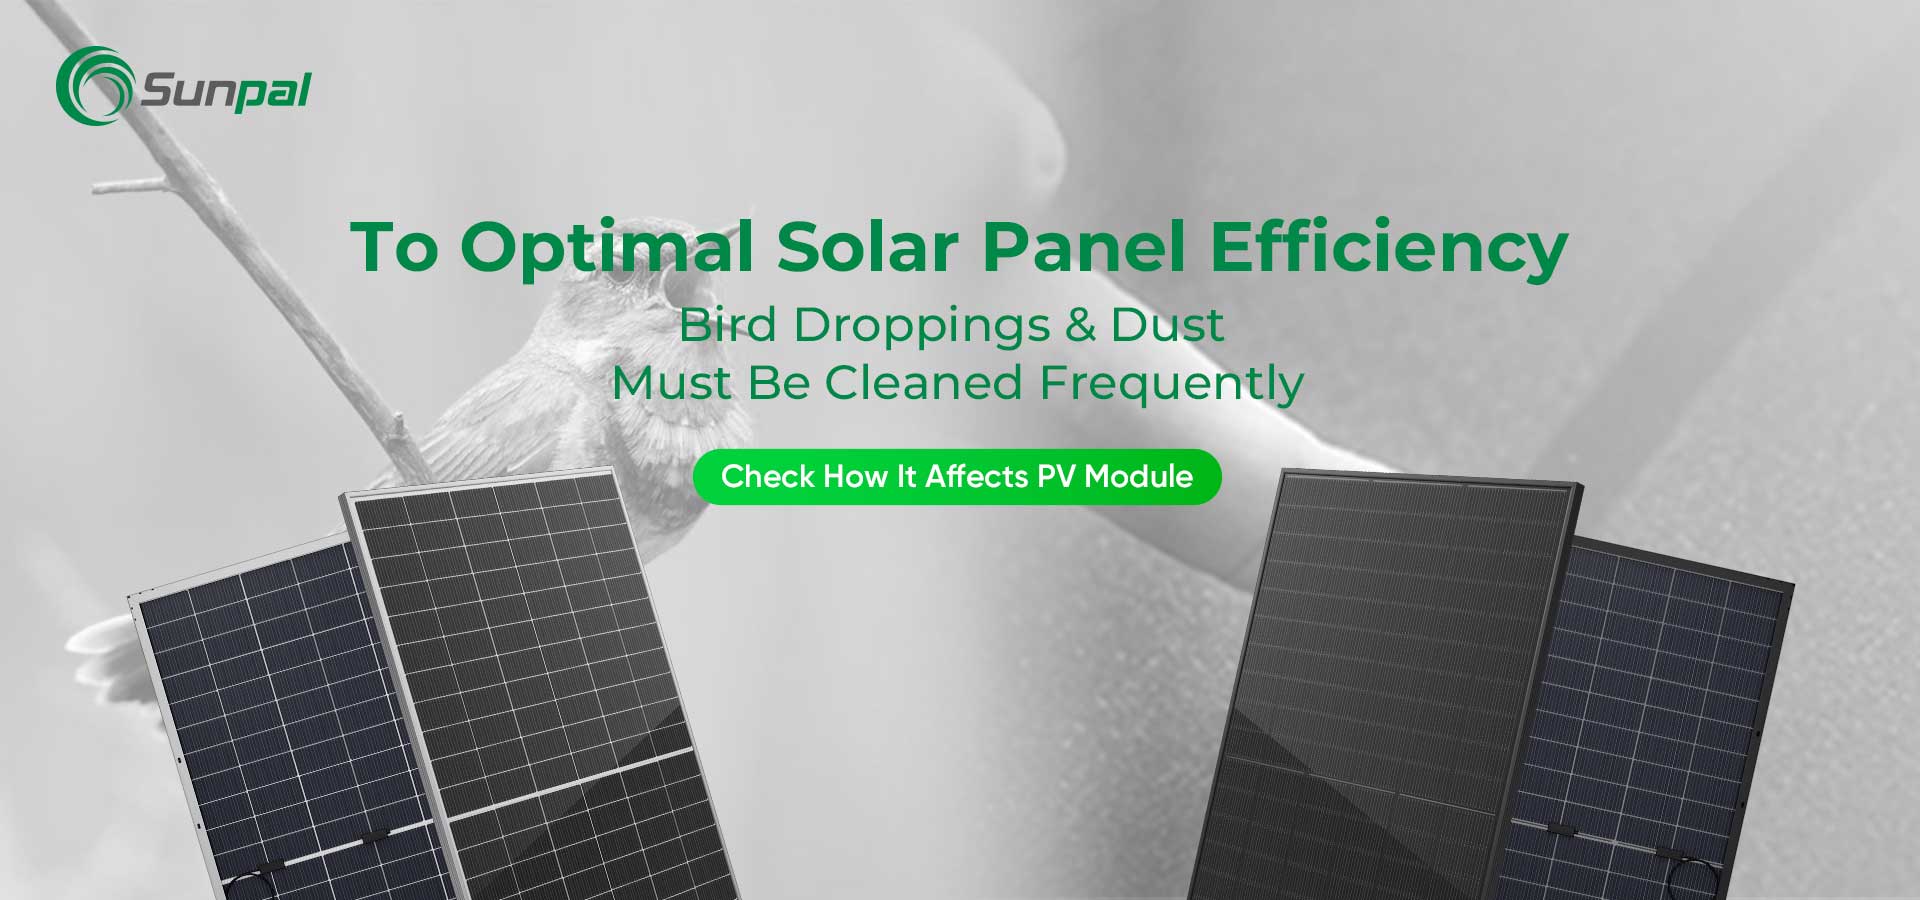 Kurz i ptasie odchody: czyszczenie w celu uzyskania optymalnej wydajności paneli słonecznych